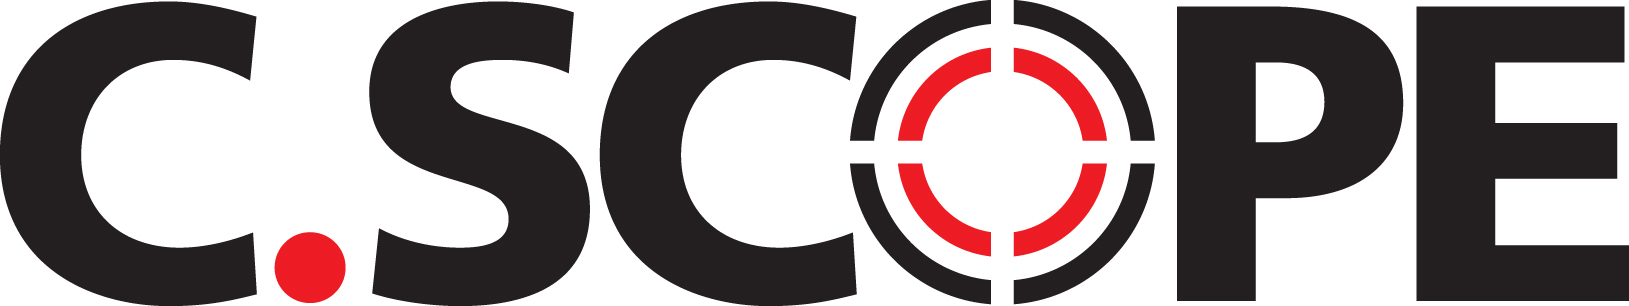 Логотип бренда C-Scope